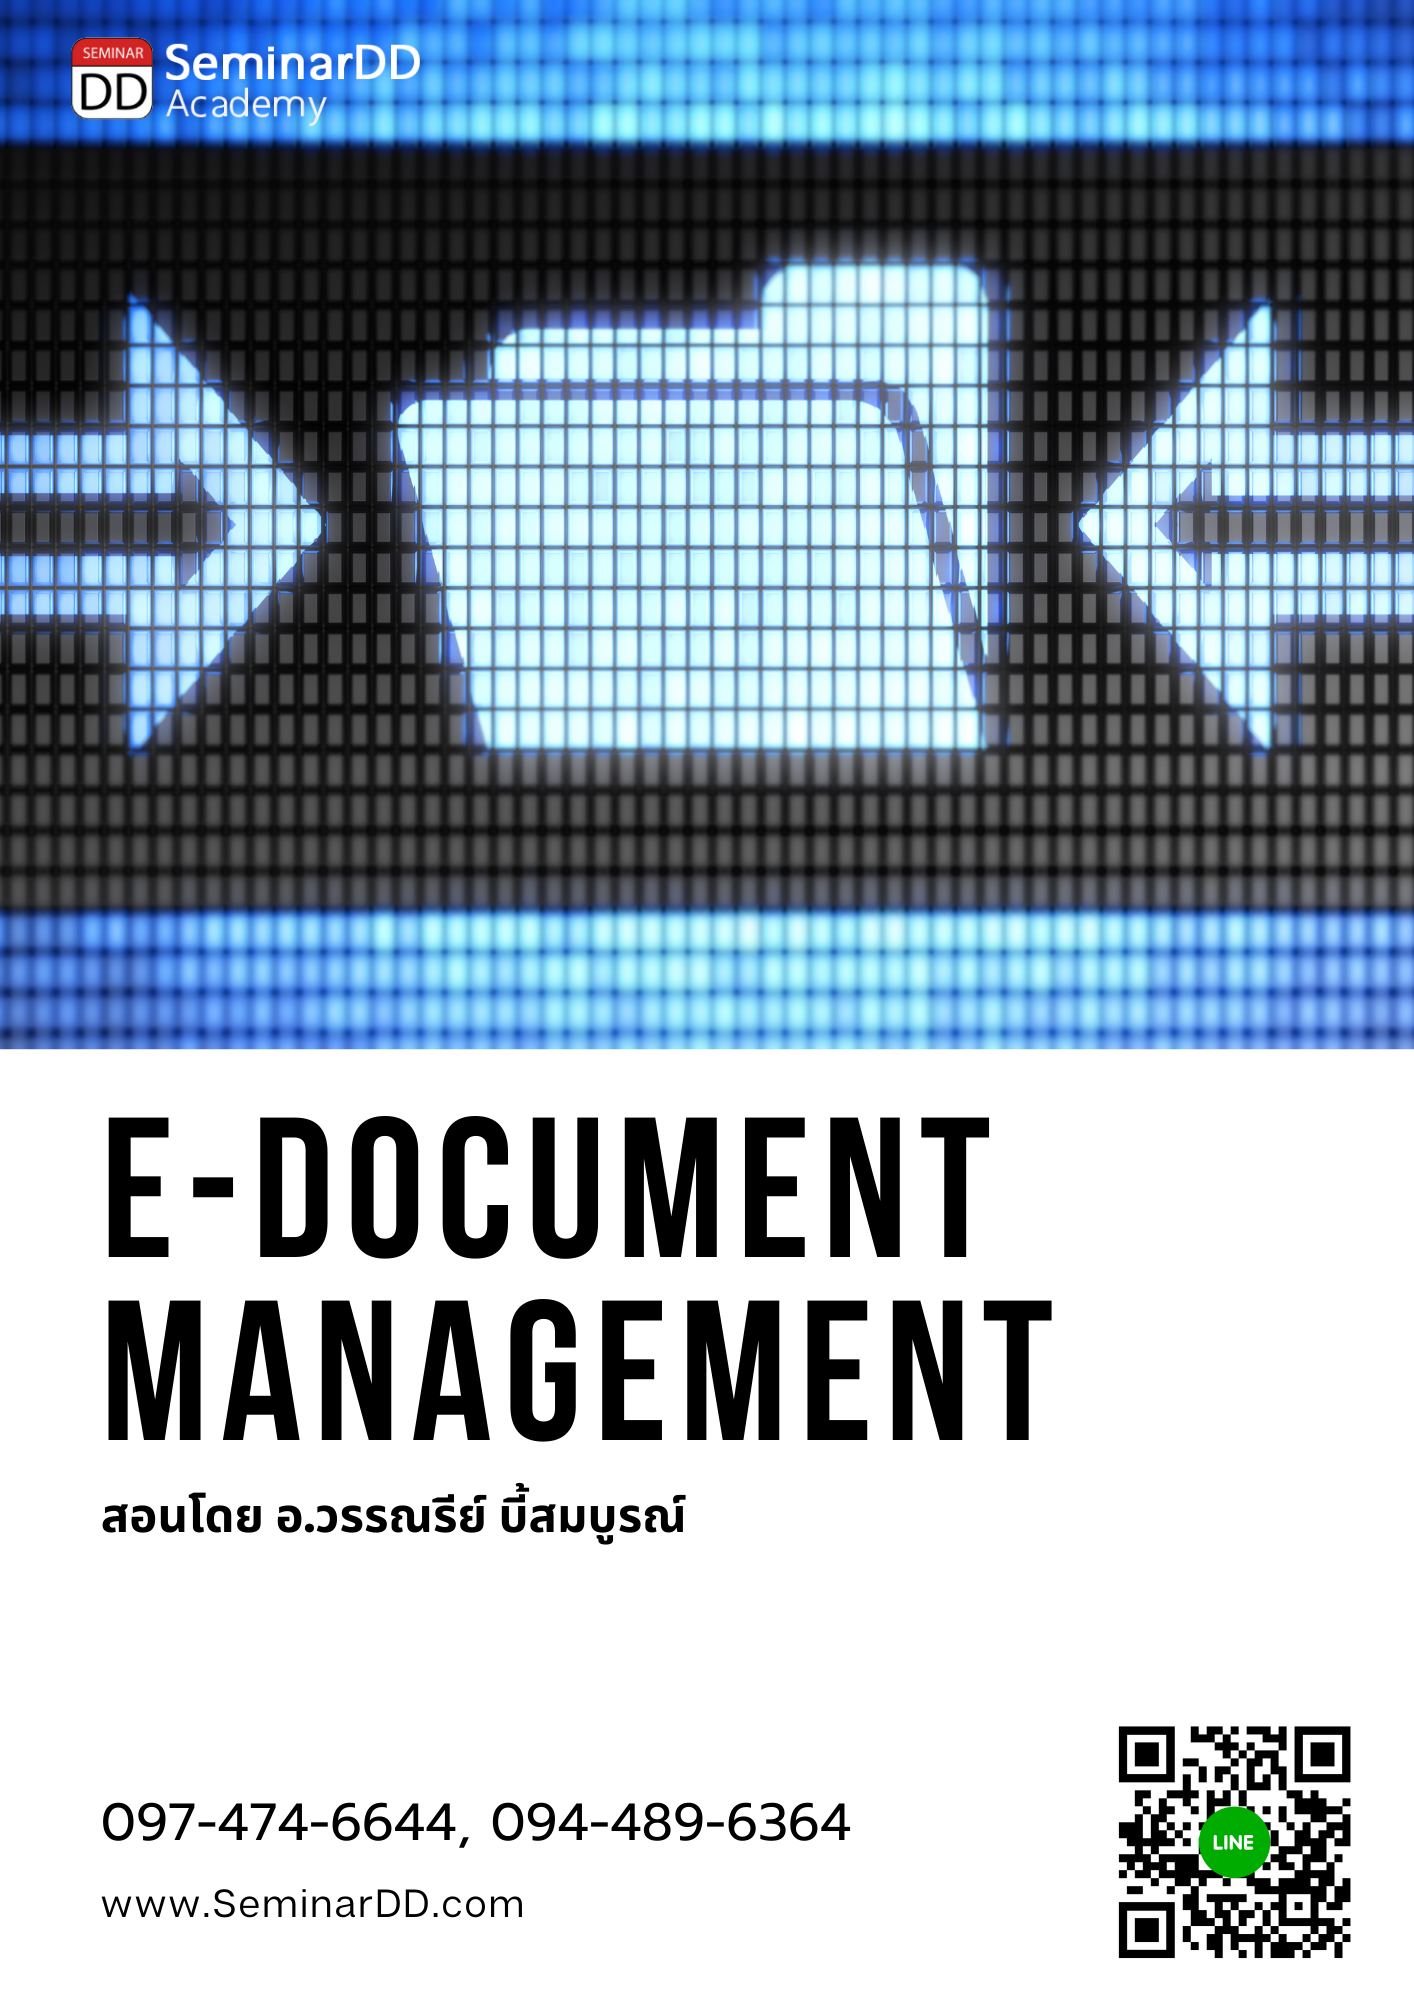 อบรมออนไลน์ผ่าน Zoom หลักสูตร หลักสูตร การบริหารและจัดเก็บเอกสาร ในรูปแบบดิจิทัล ตามมาตรฐานสากล (E-Document Management)